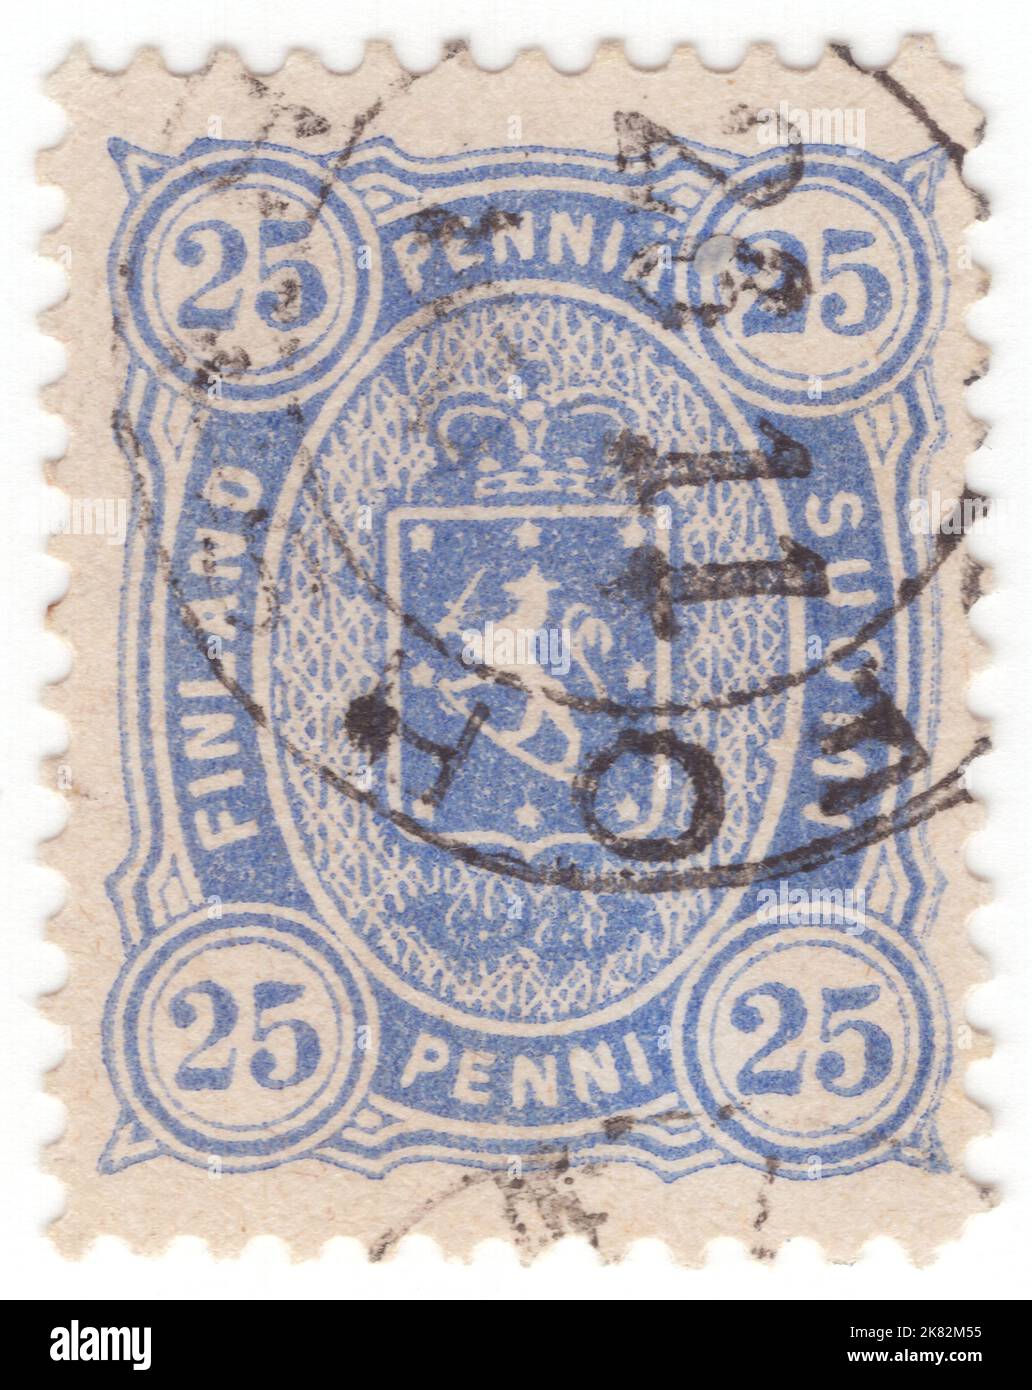 FINNLAND - 1885: Eine penni-ultramarine Briefmarke aus dem Jahr 25 mit Wappen und Posthörnern in ovalem Rahmen Stockfoto